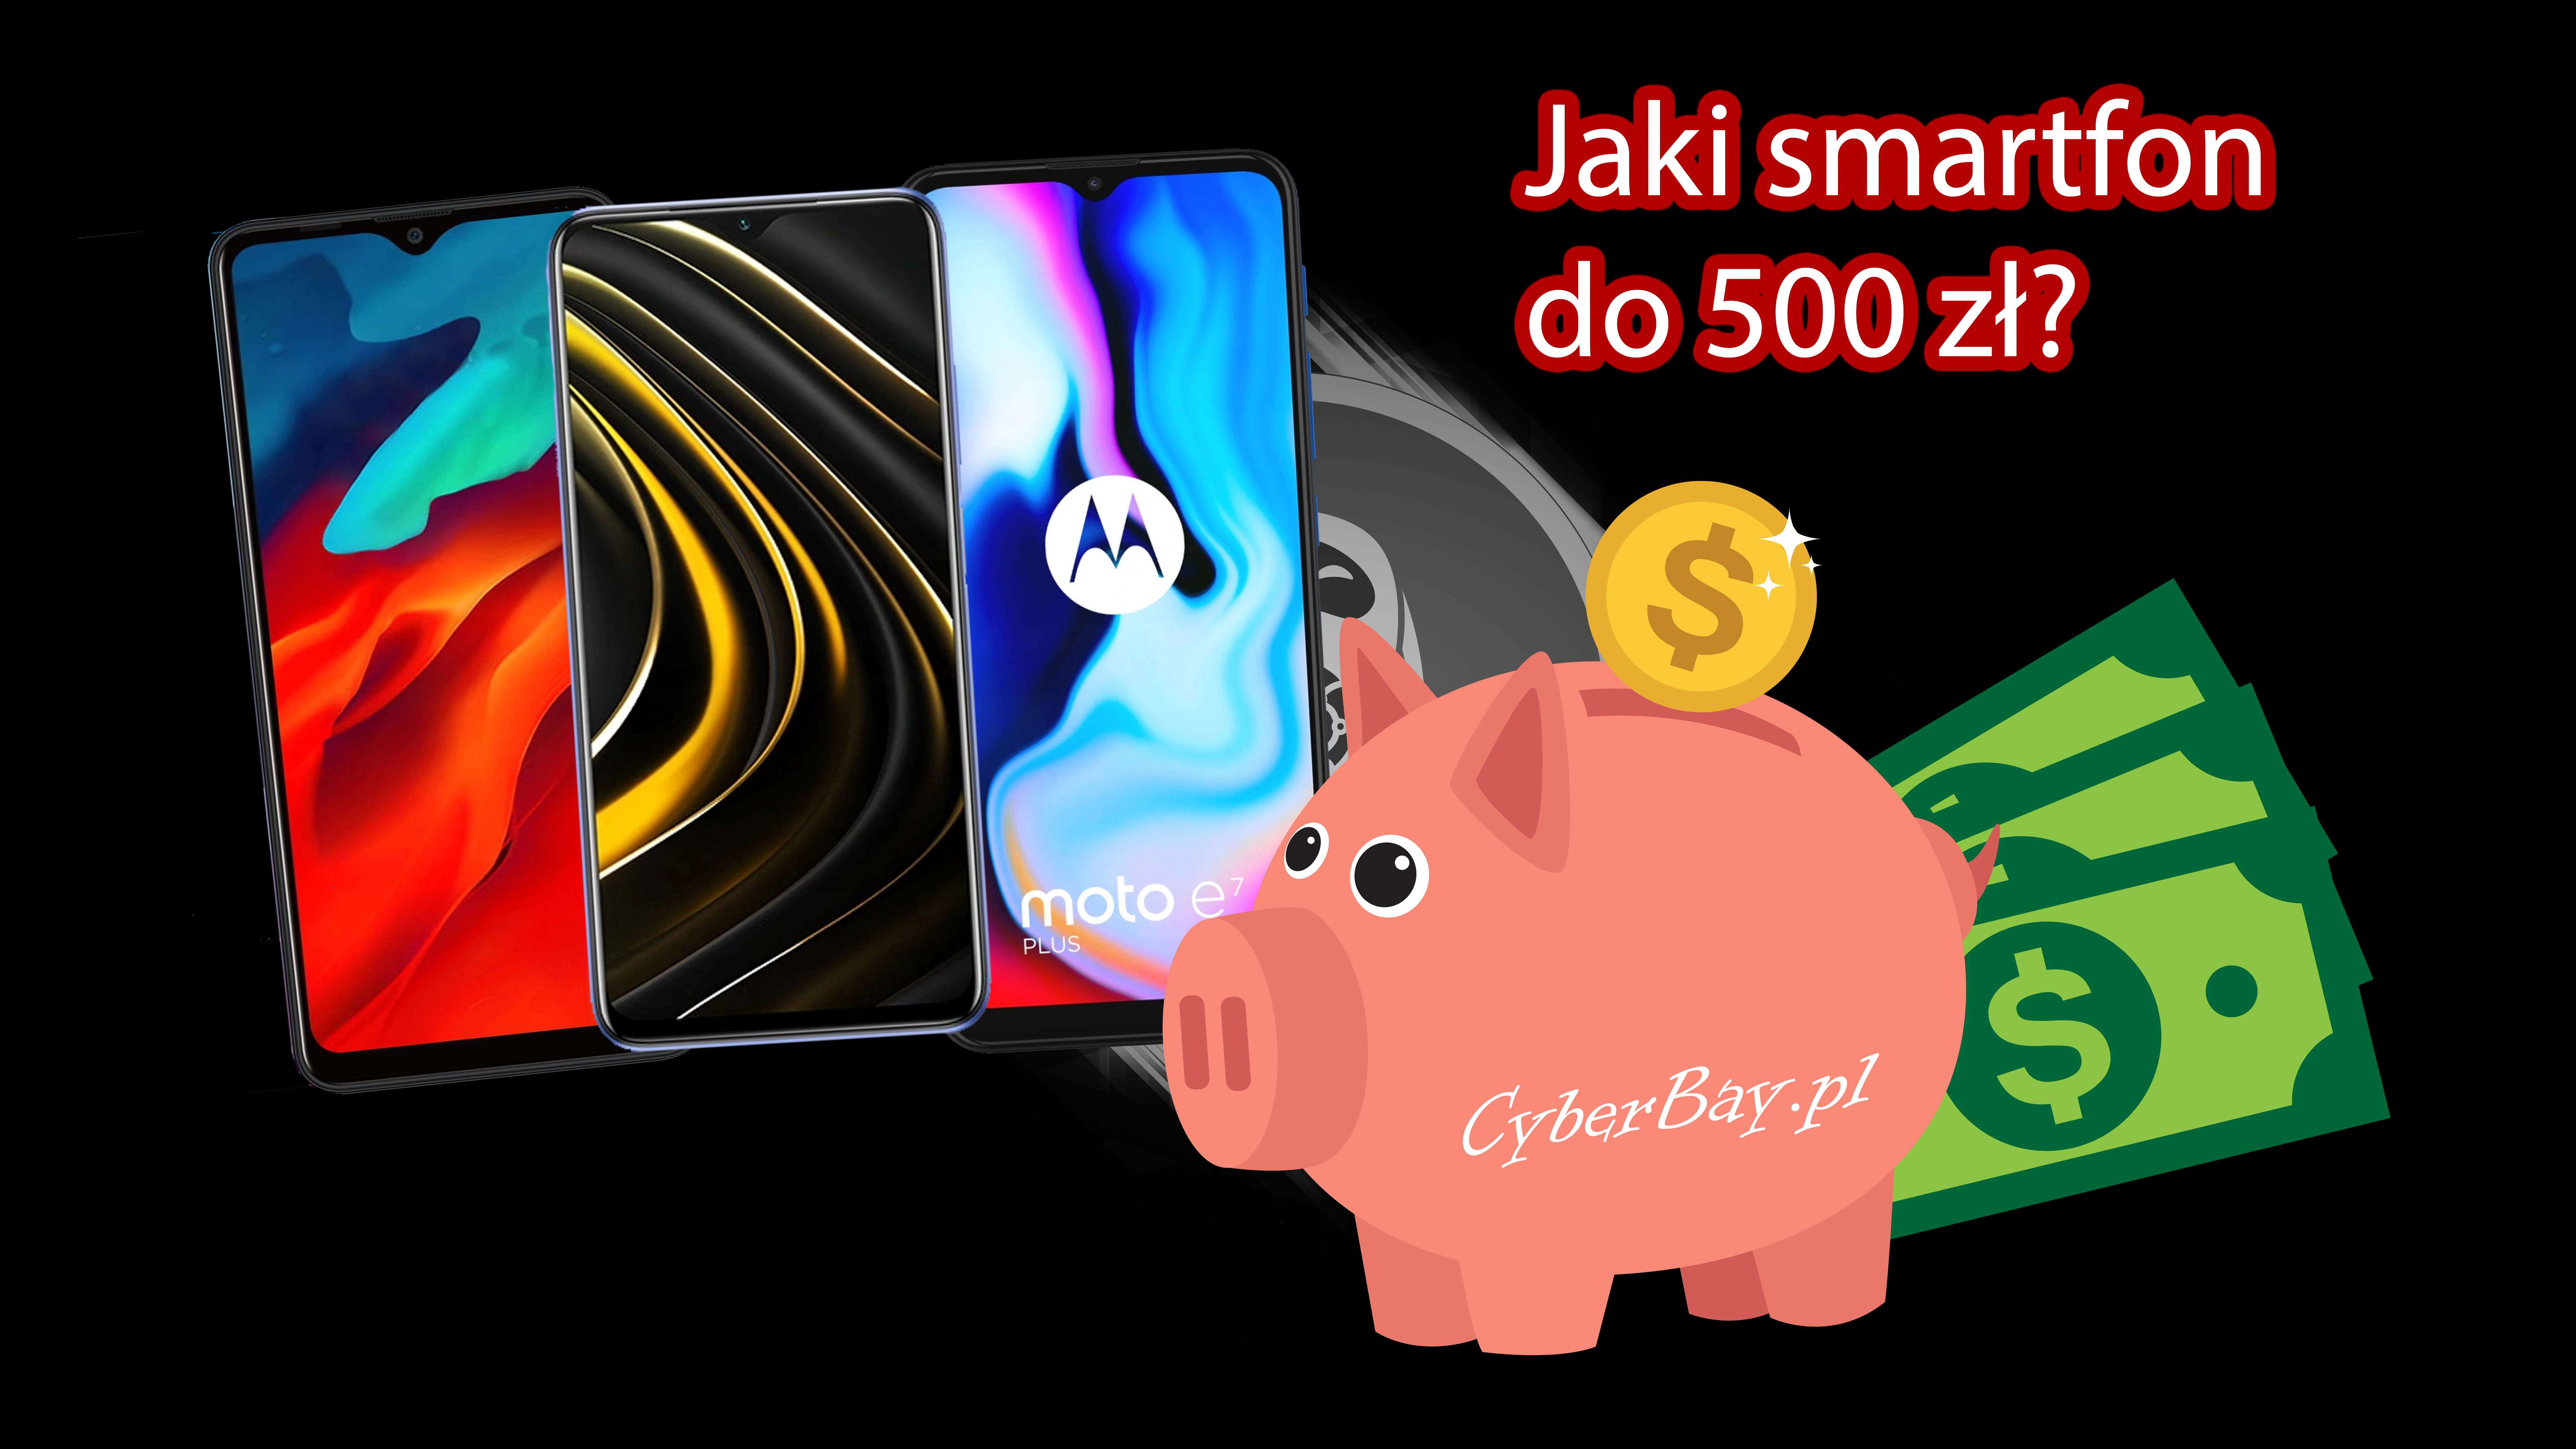 Miniaturka TOP 5 - Jaki smartfon do 500 zł kupić? – Ranking Marzec/Kwiecień 2021